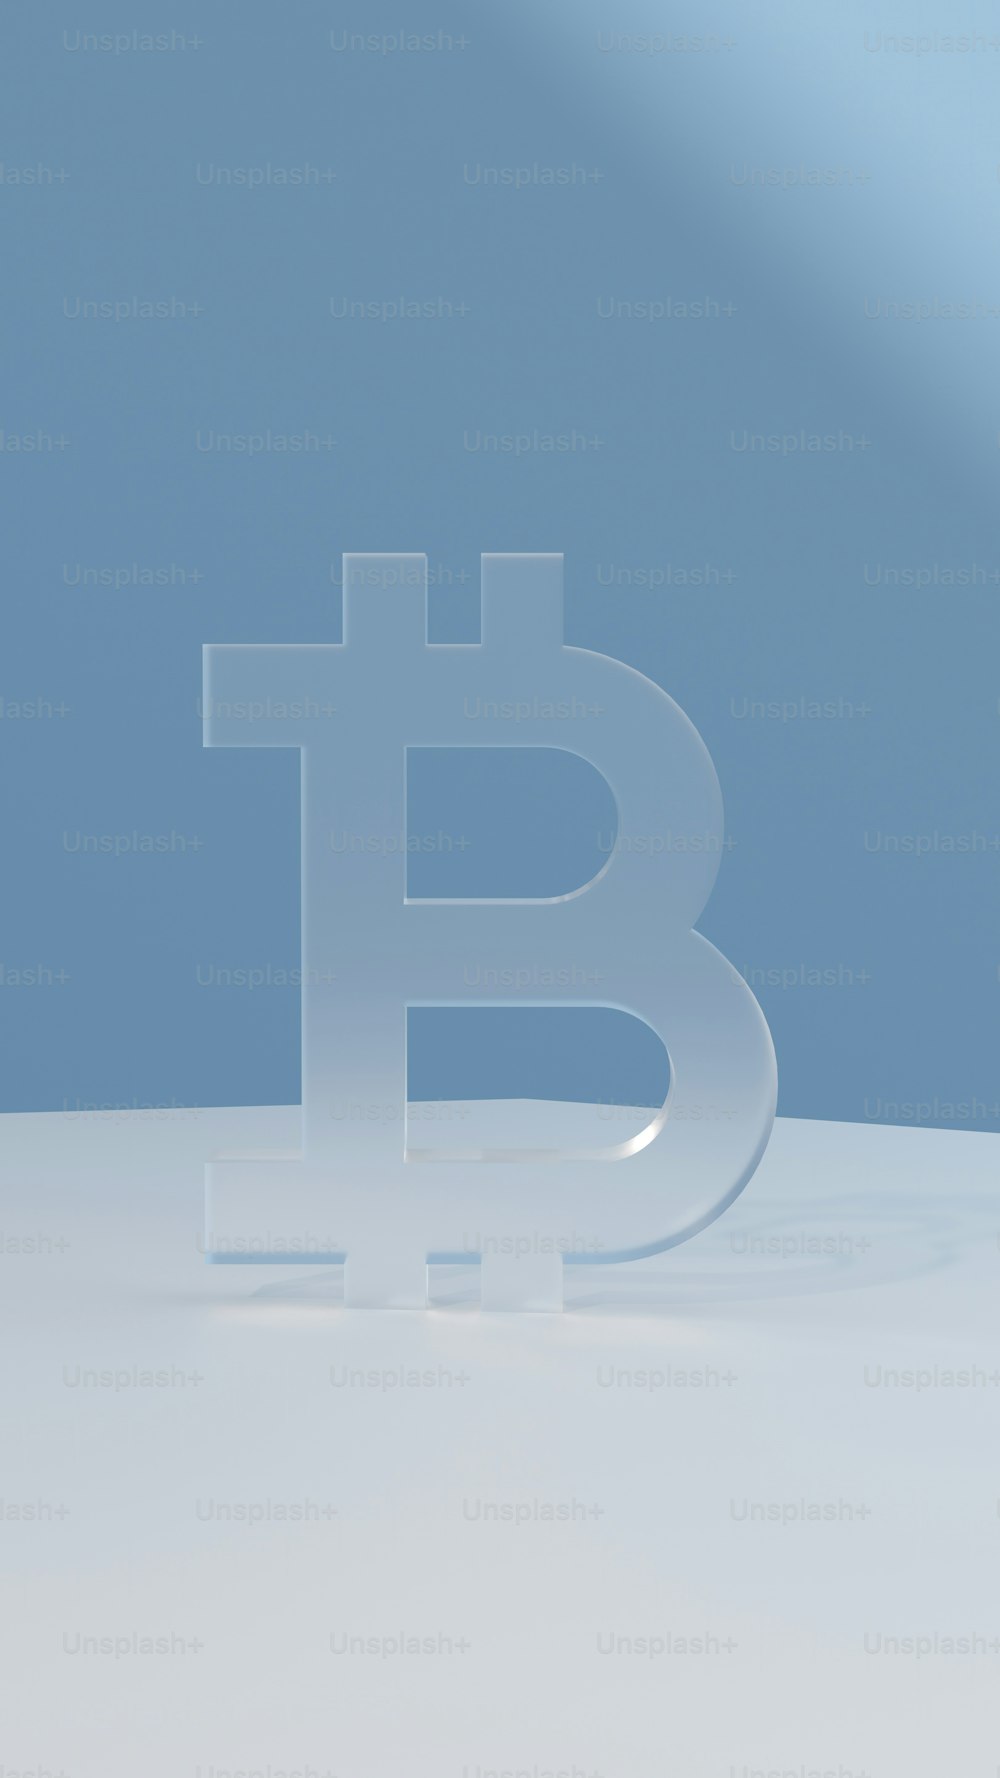 Un logotipo de Bitcoin se muestra en una superficie blanca